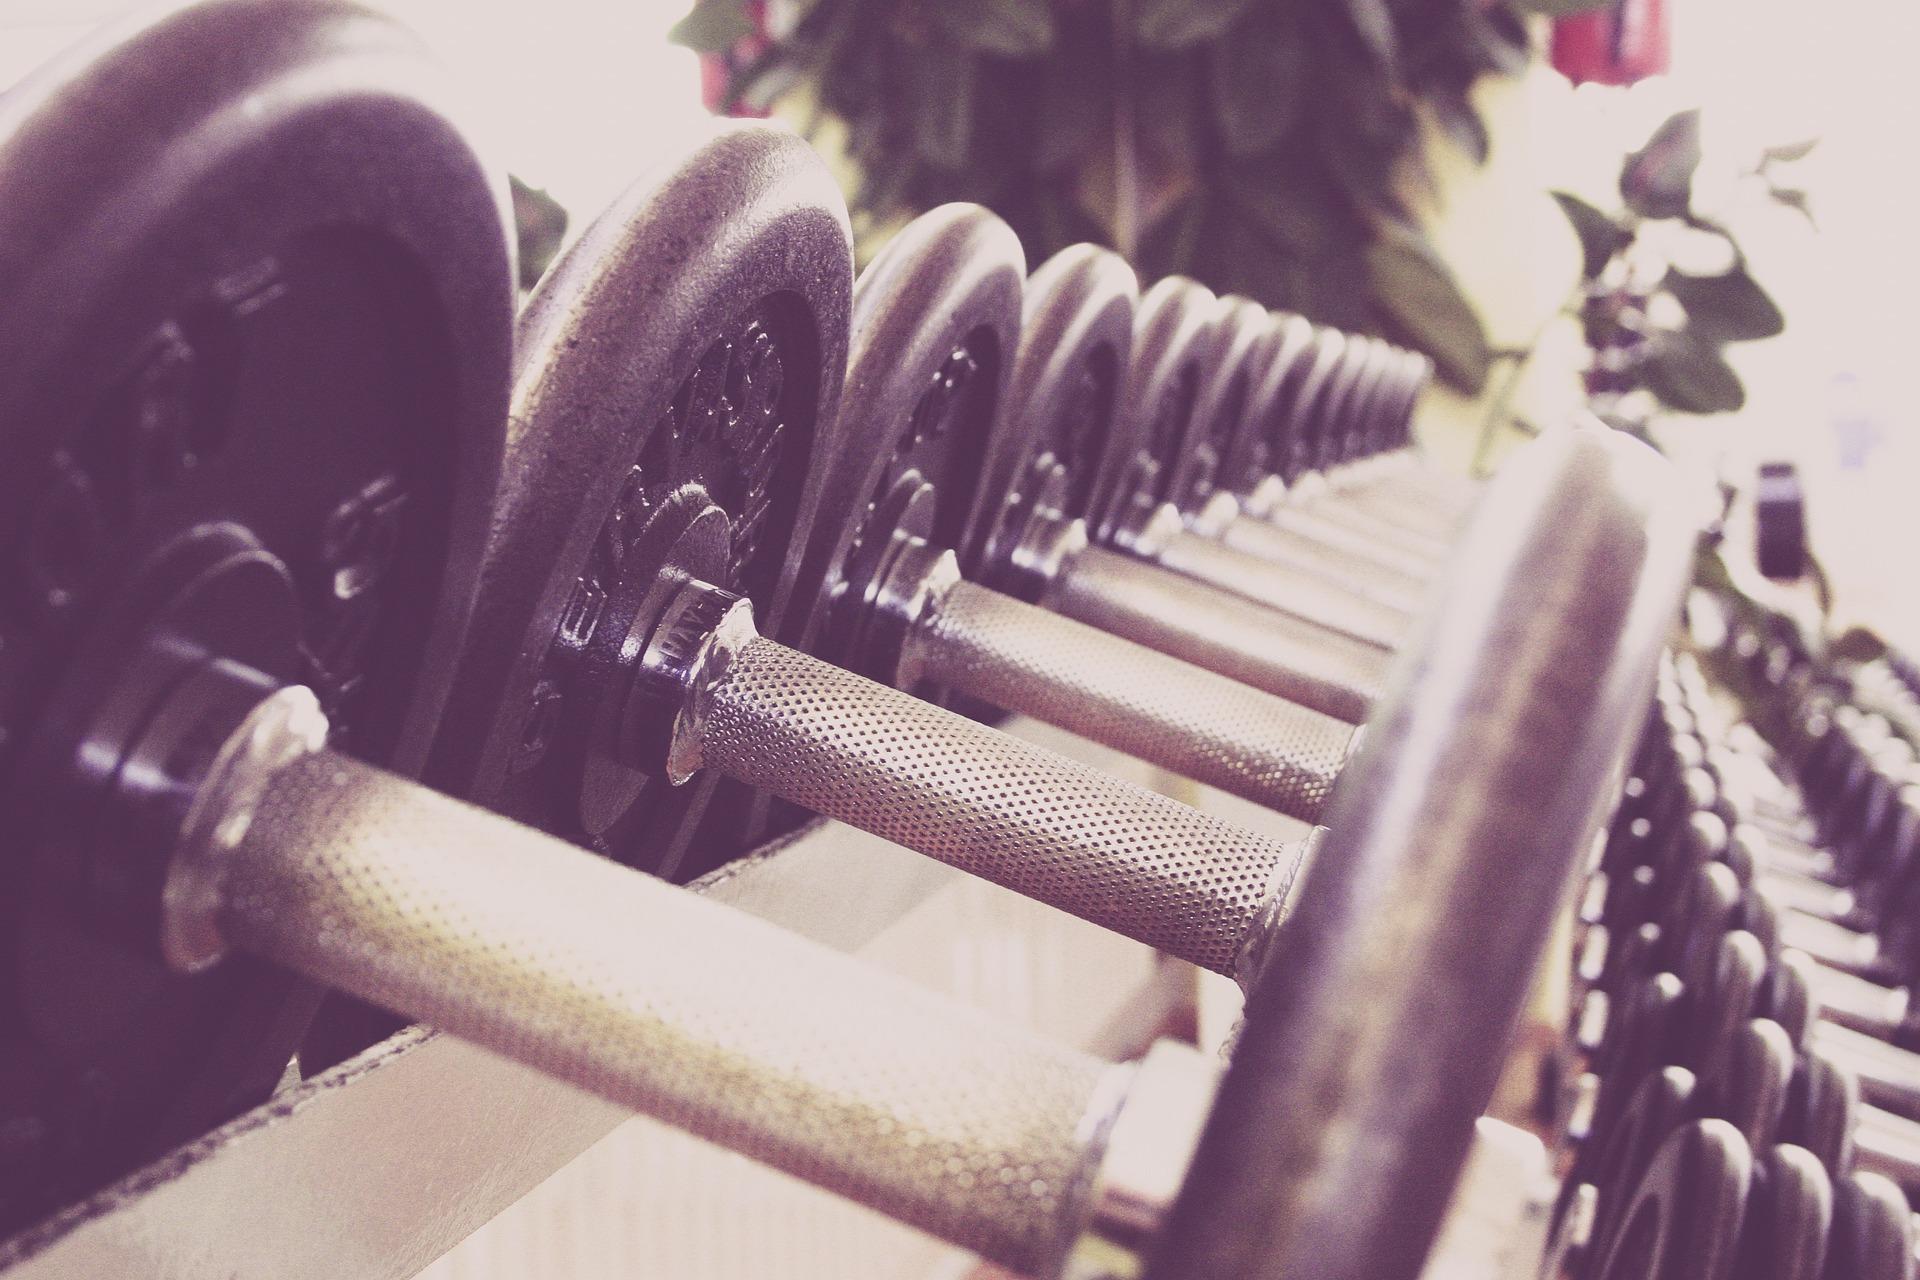 Closeup of dumbells at a gym.